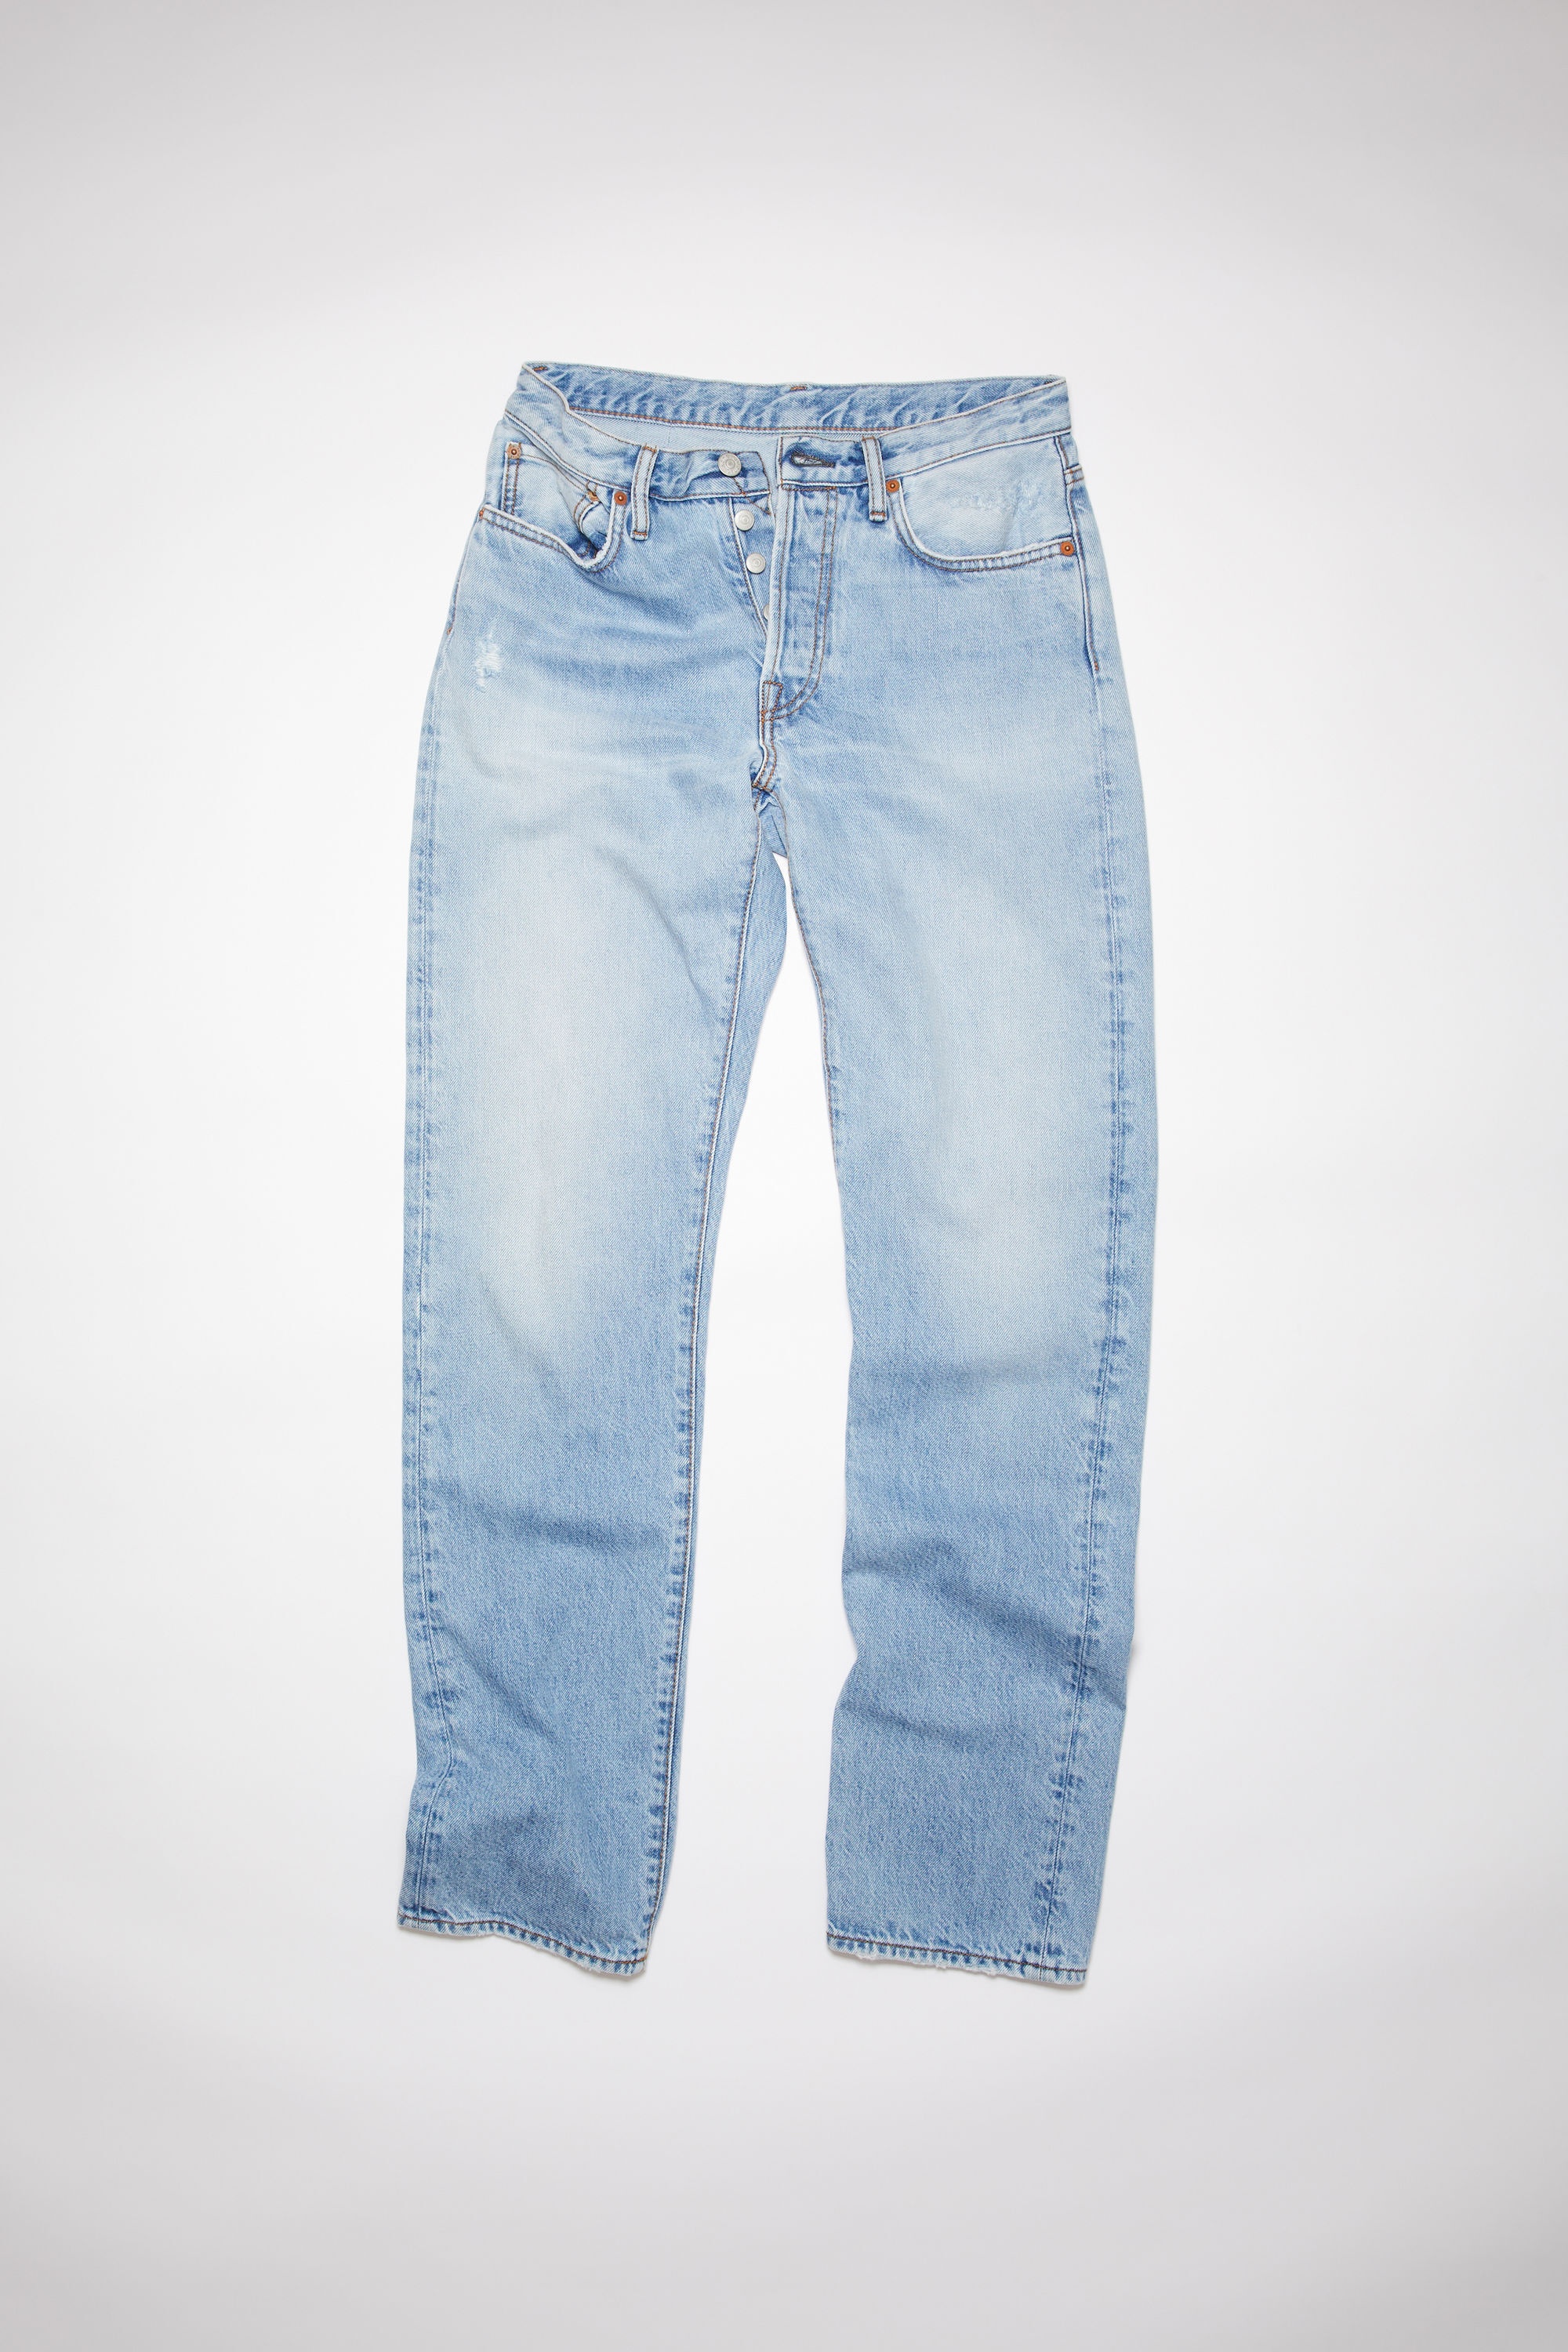 Regular fit jeans - 1997 - Light blue - 7